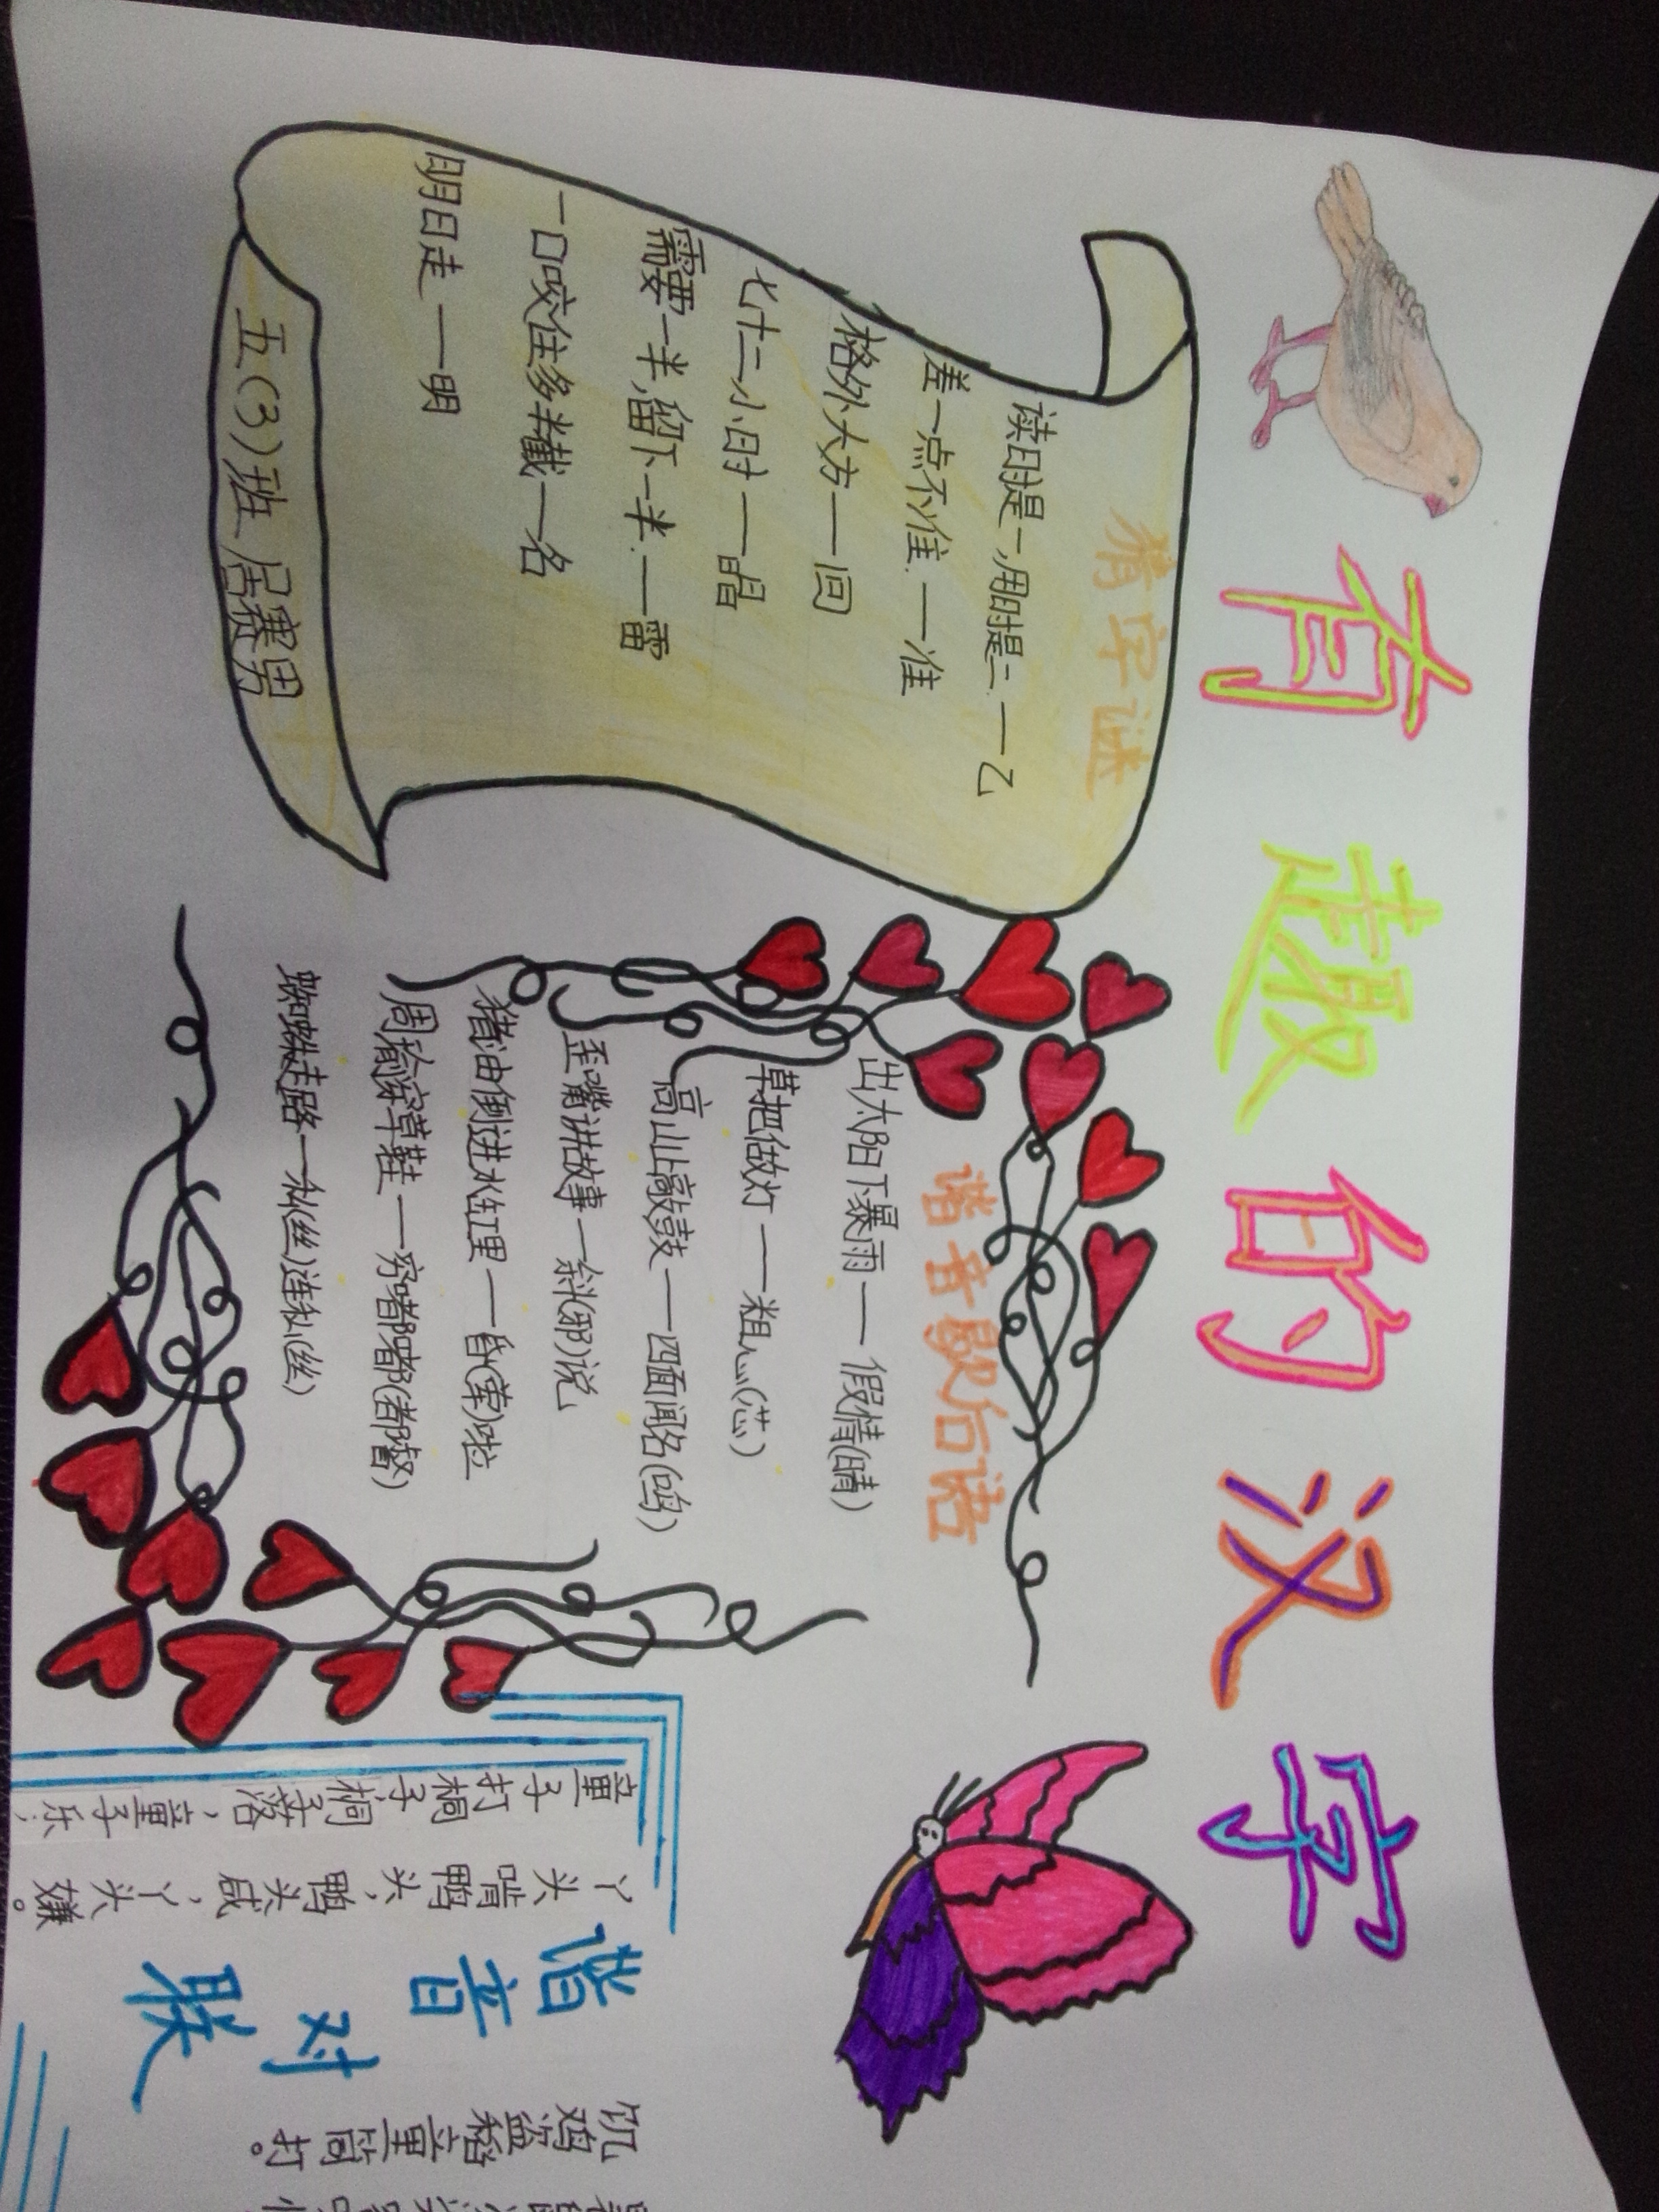 上街区铝城小学五年级三班举行“有趣的汉字”手抄报成果展示 - 动态上传 - 活动 - 未来网红领巾集结号